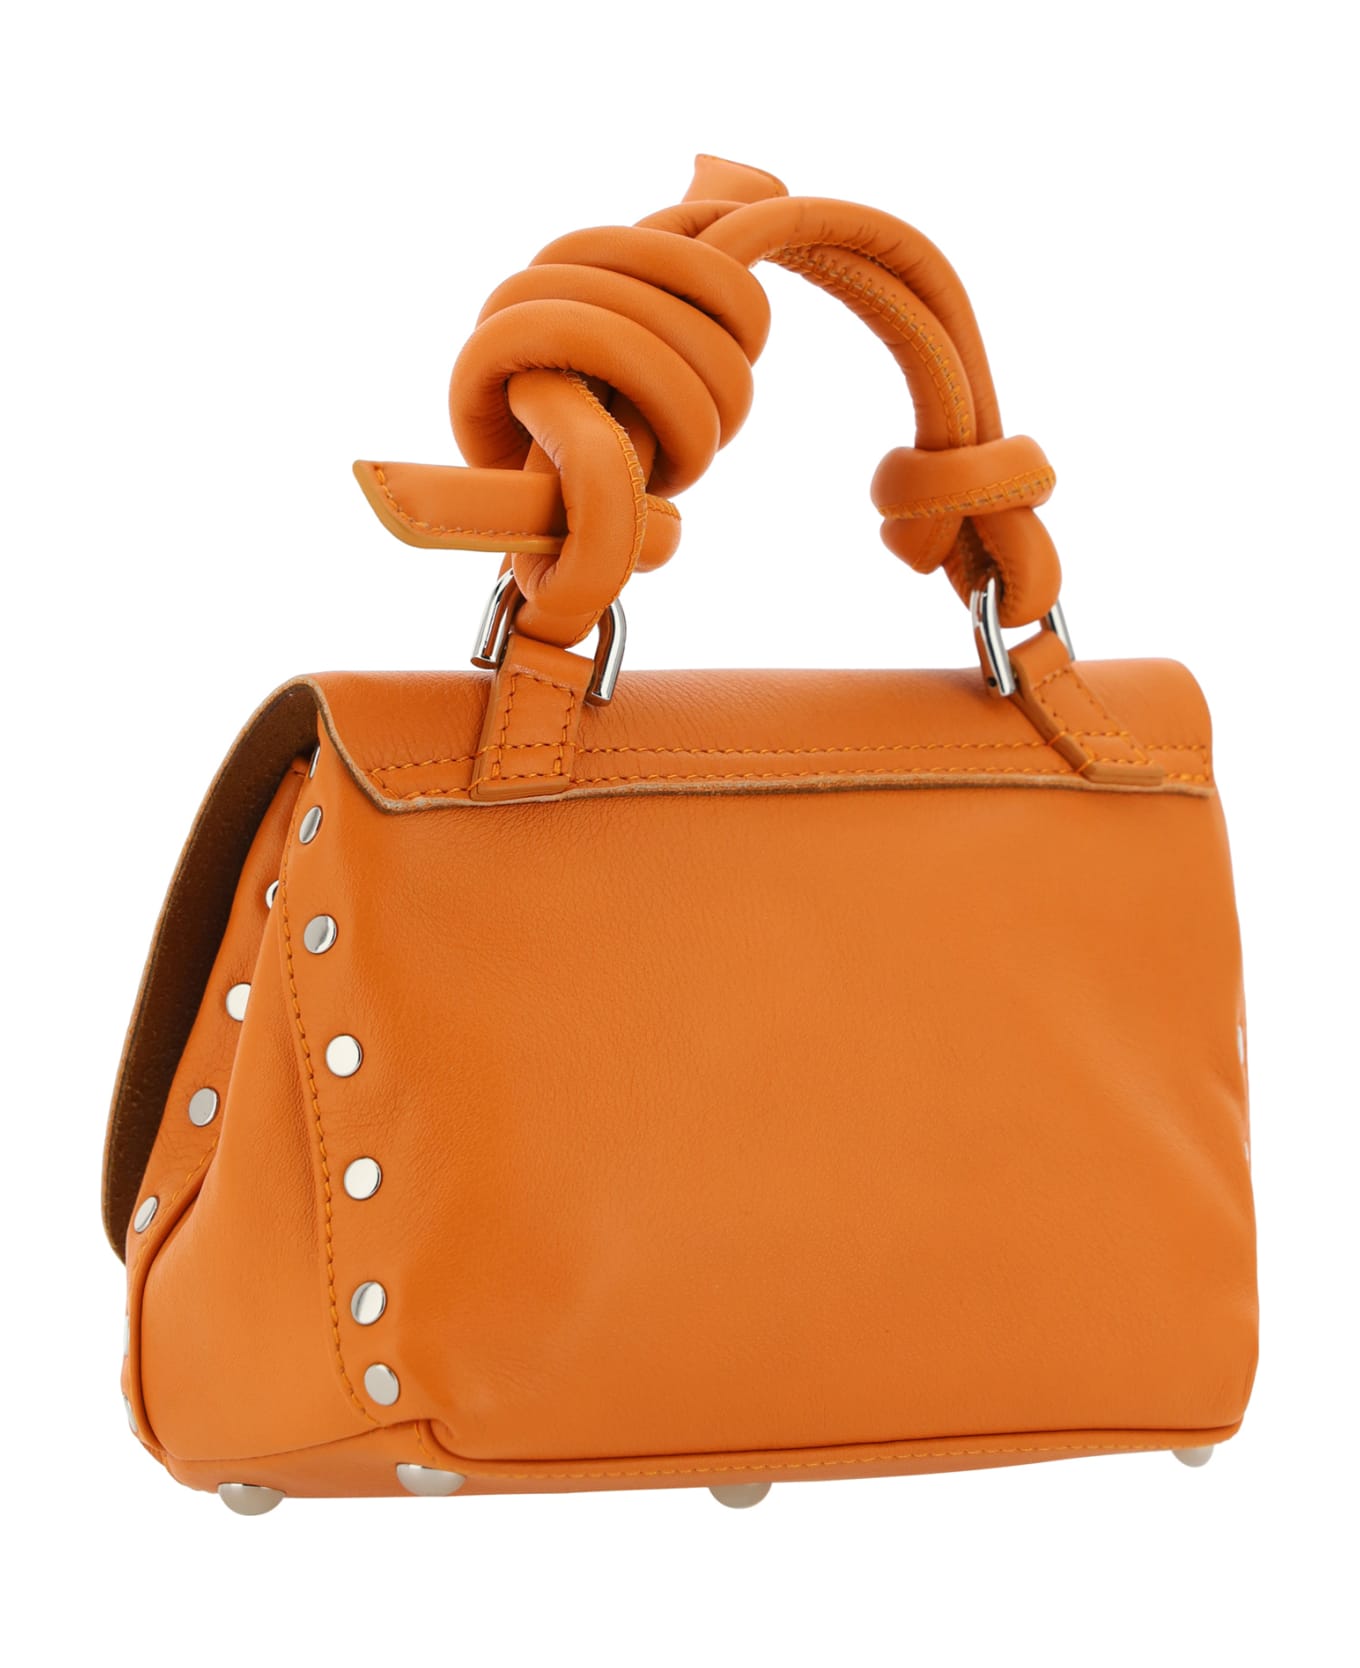 Zanellato Postina Piuma Handbag - Orange Noto